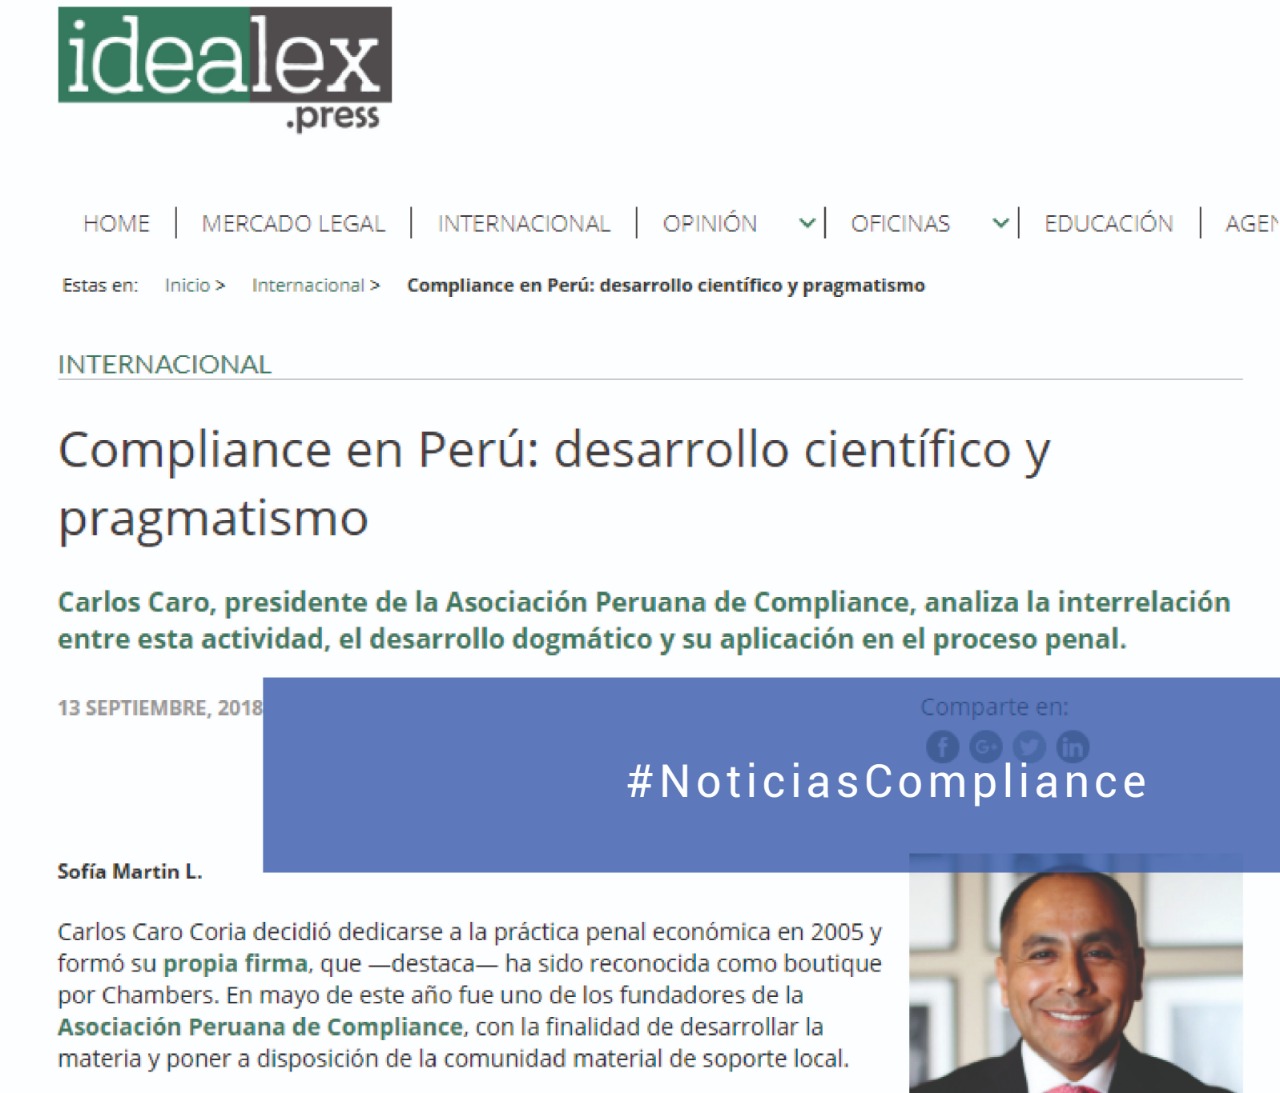 Compliance En Perú: Desarrollo Científico Y Pragmático